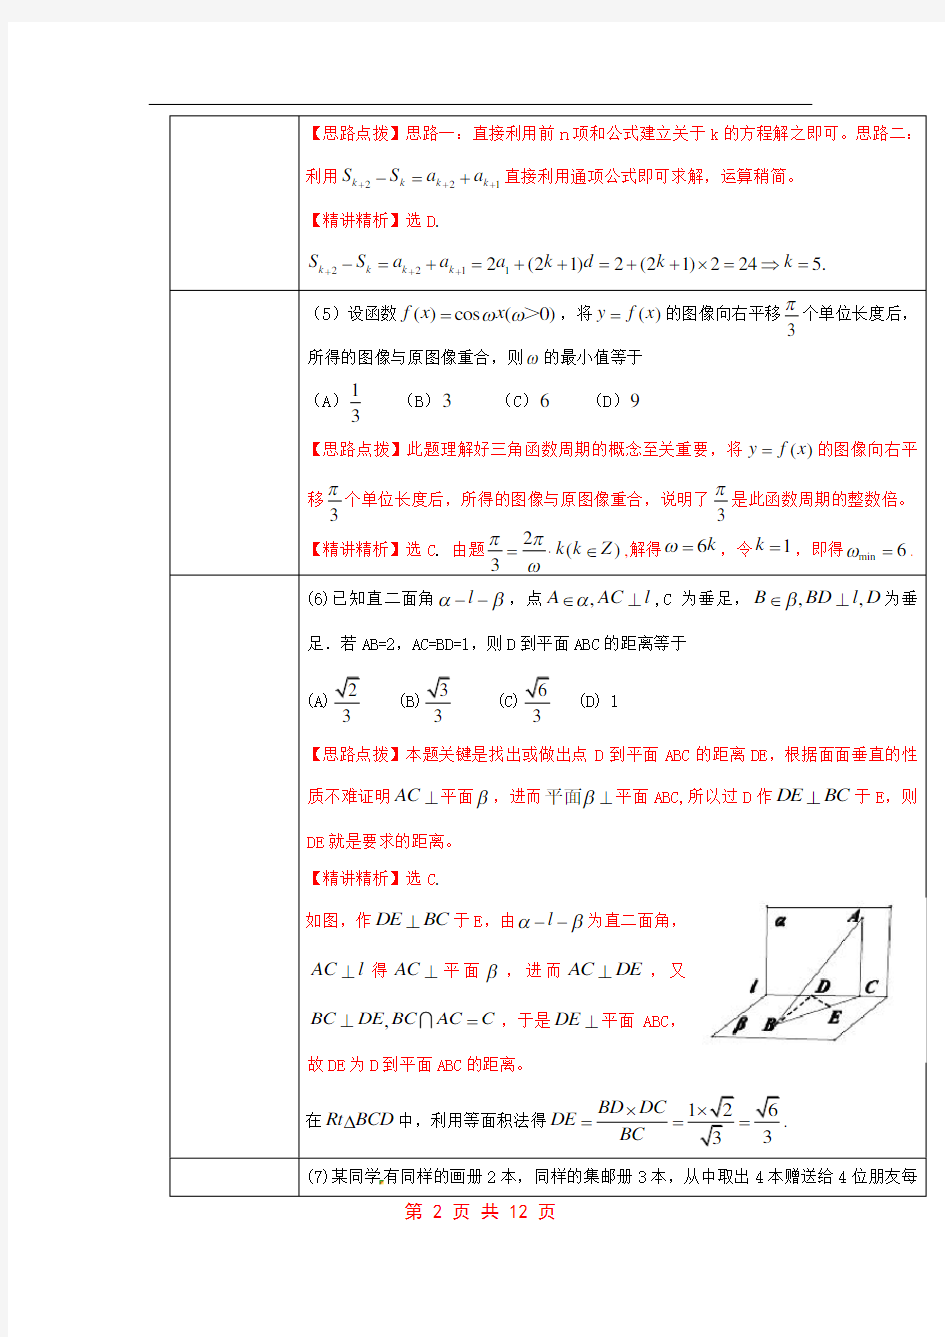 2011年高考试题(全国卷理科数学)解析版